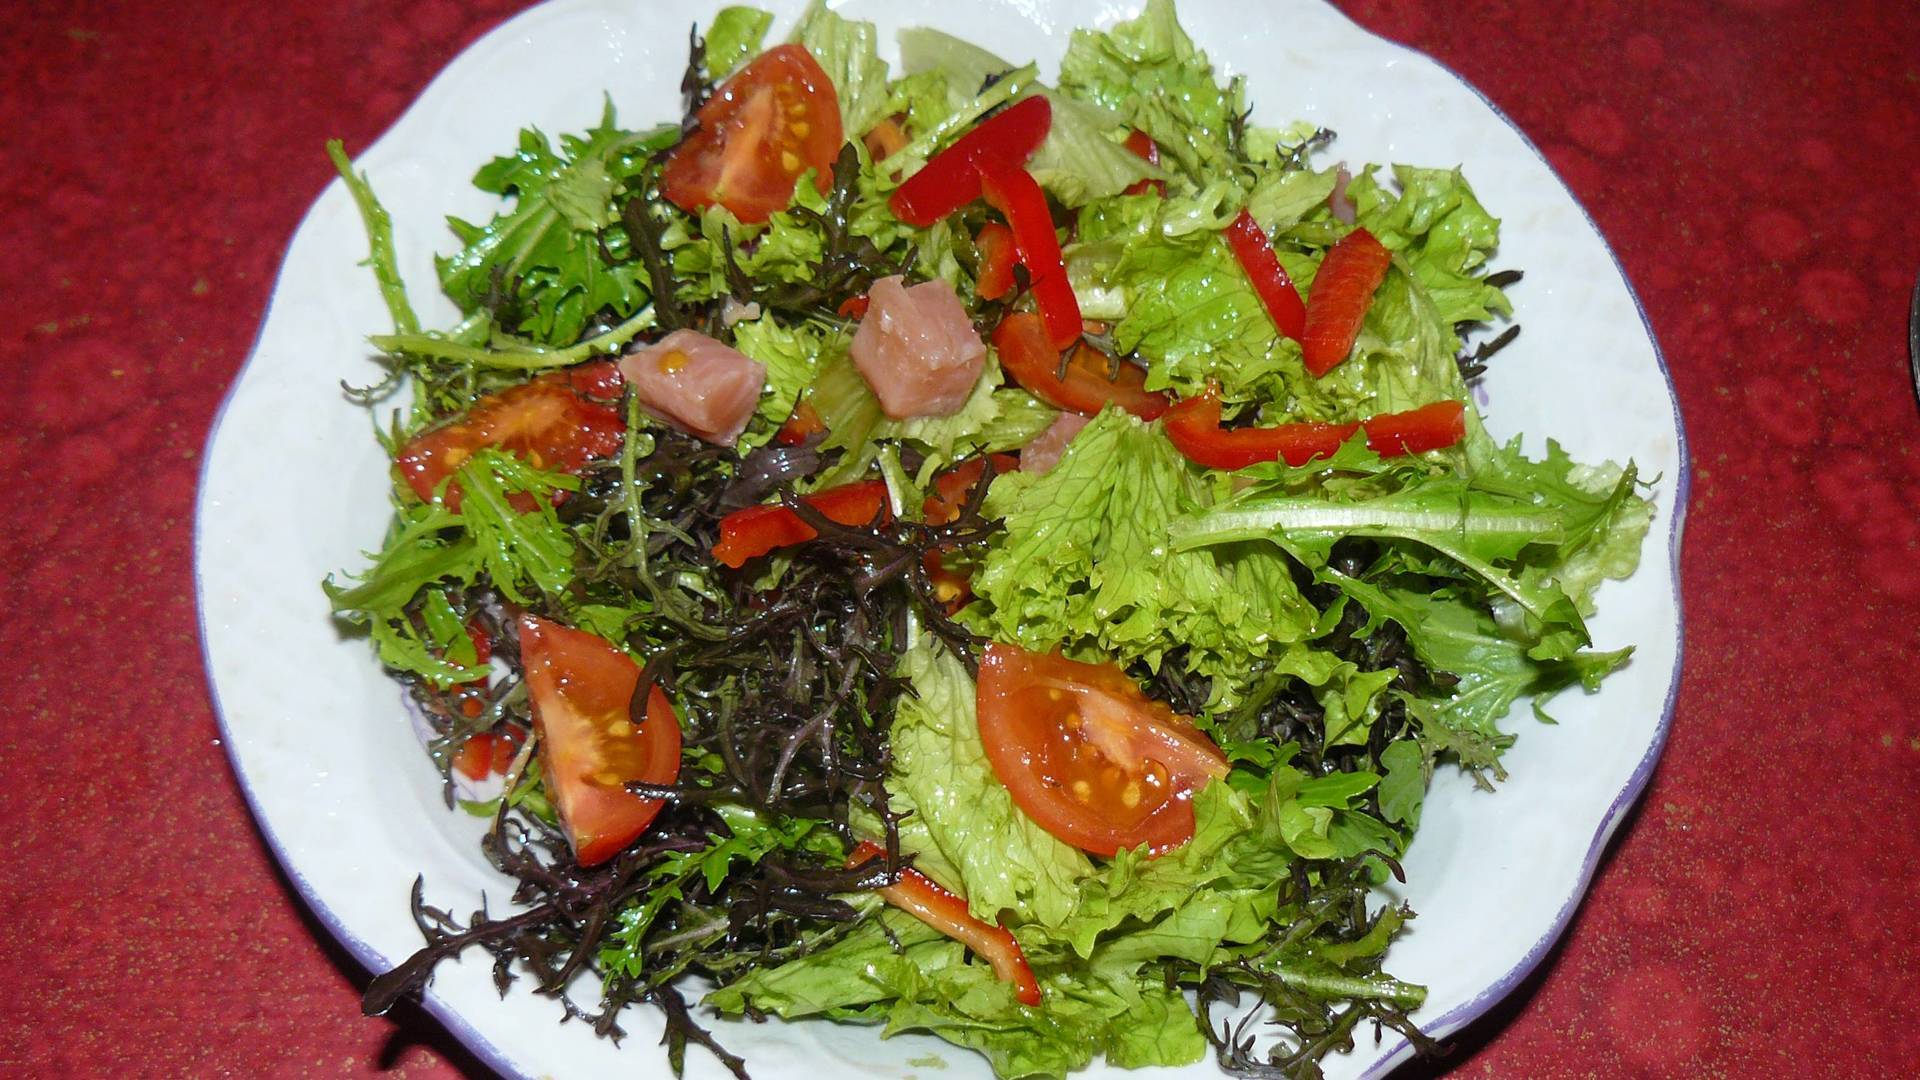 Фото к рецепту: Салат с лососем